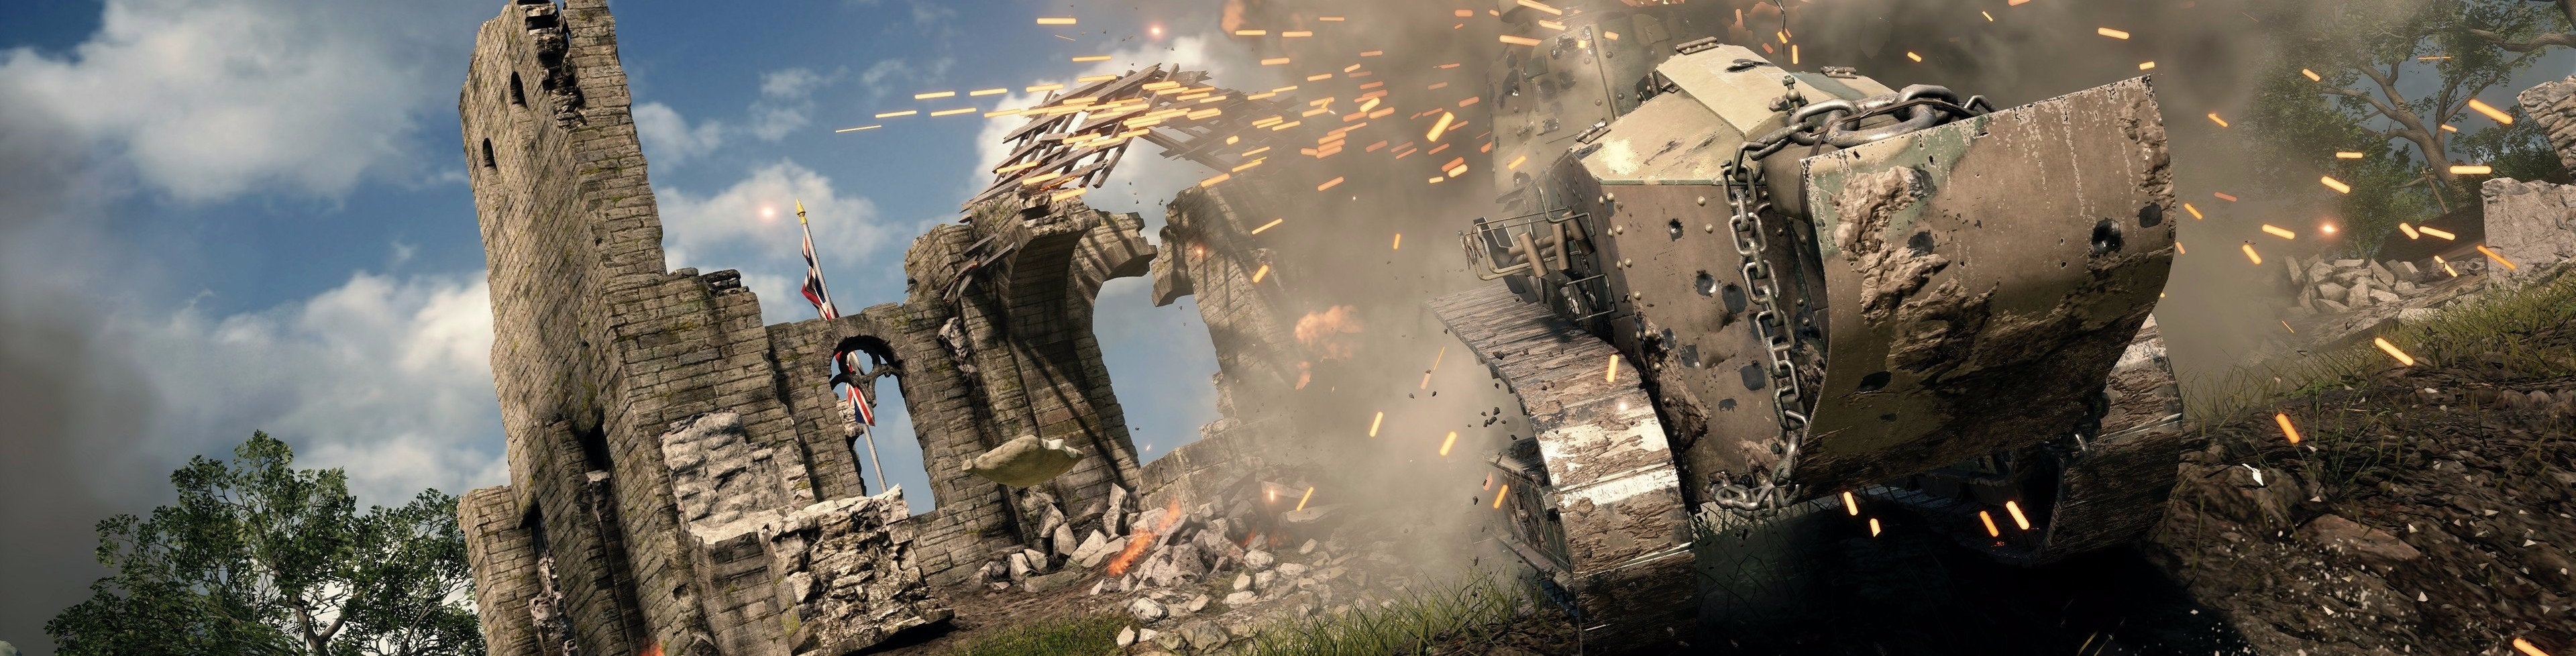 Immagine di Battlefield 1 - analisi comparativa